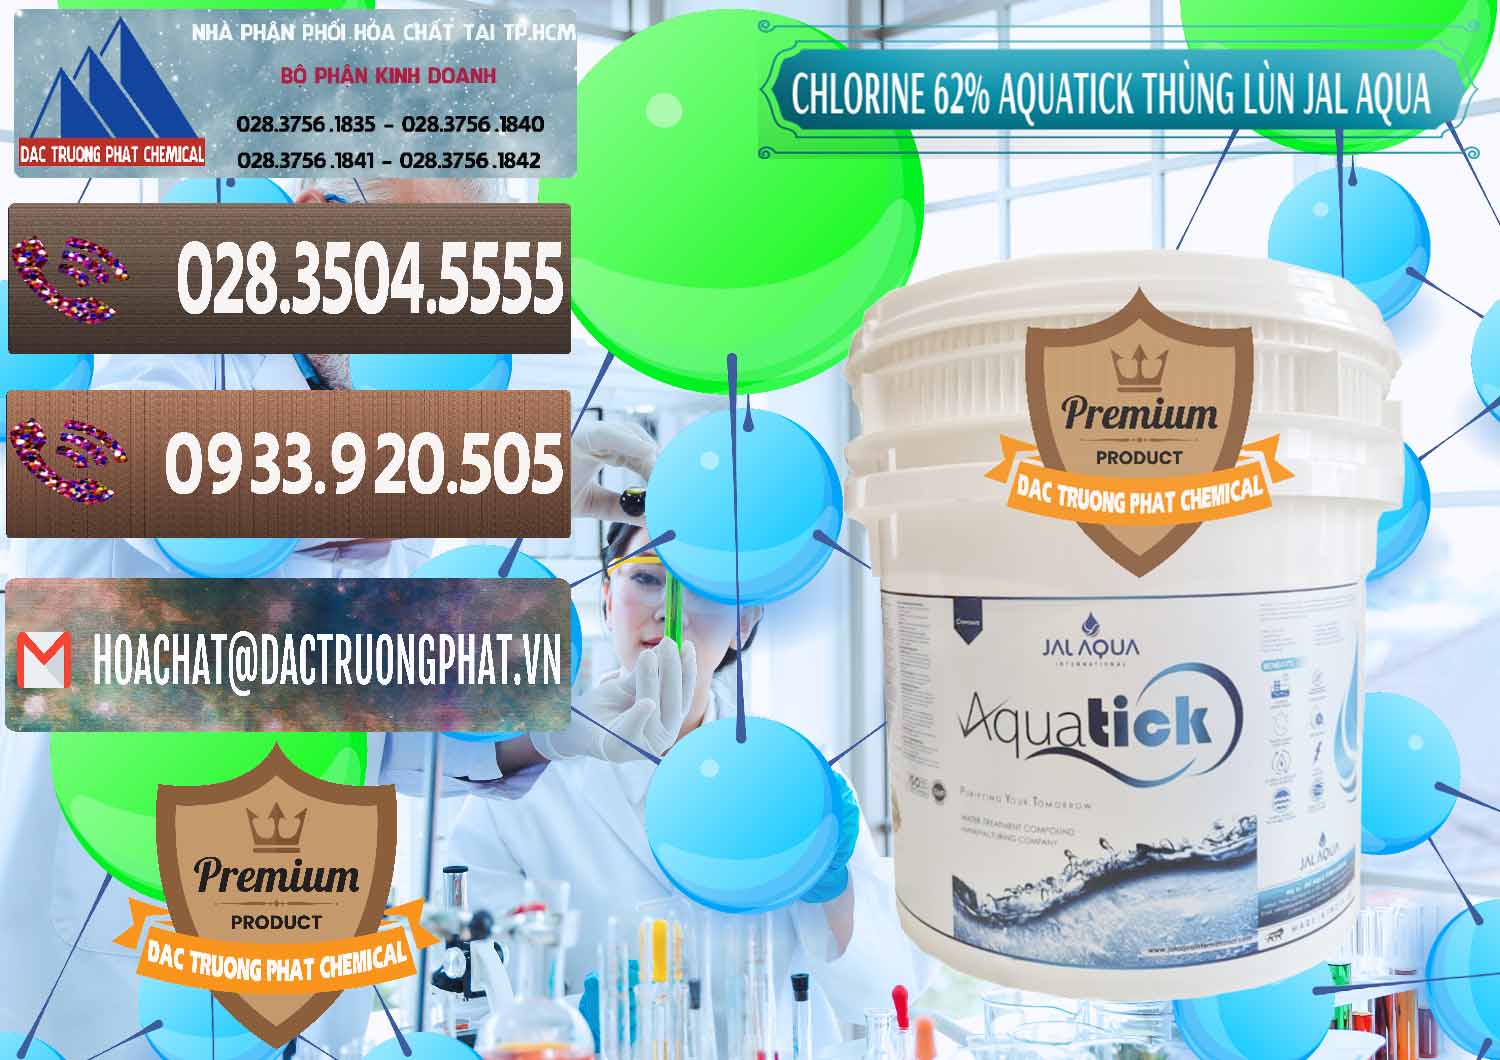 Nhà phân phối & bán Chlorine – Clorin 62% Aquatick Thùng Lùn Jal Aqua Ấn Độ India - 0238 - Cty chuyên phân phối và kinh doanh hóa chất tại TP.HCM - hoachatviet.net